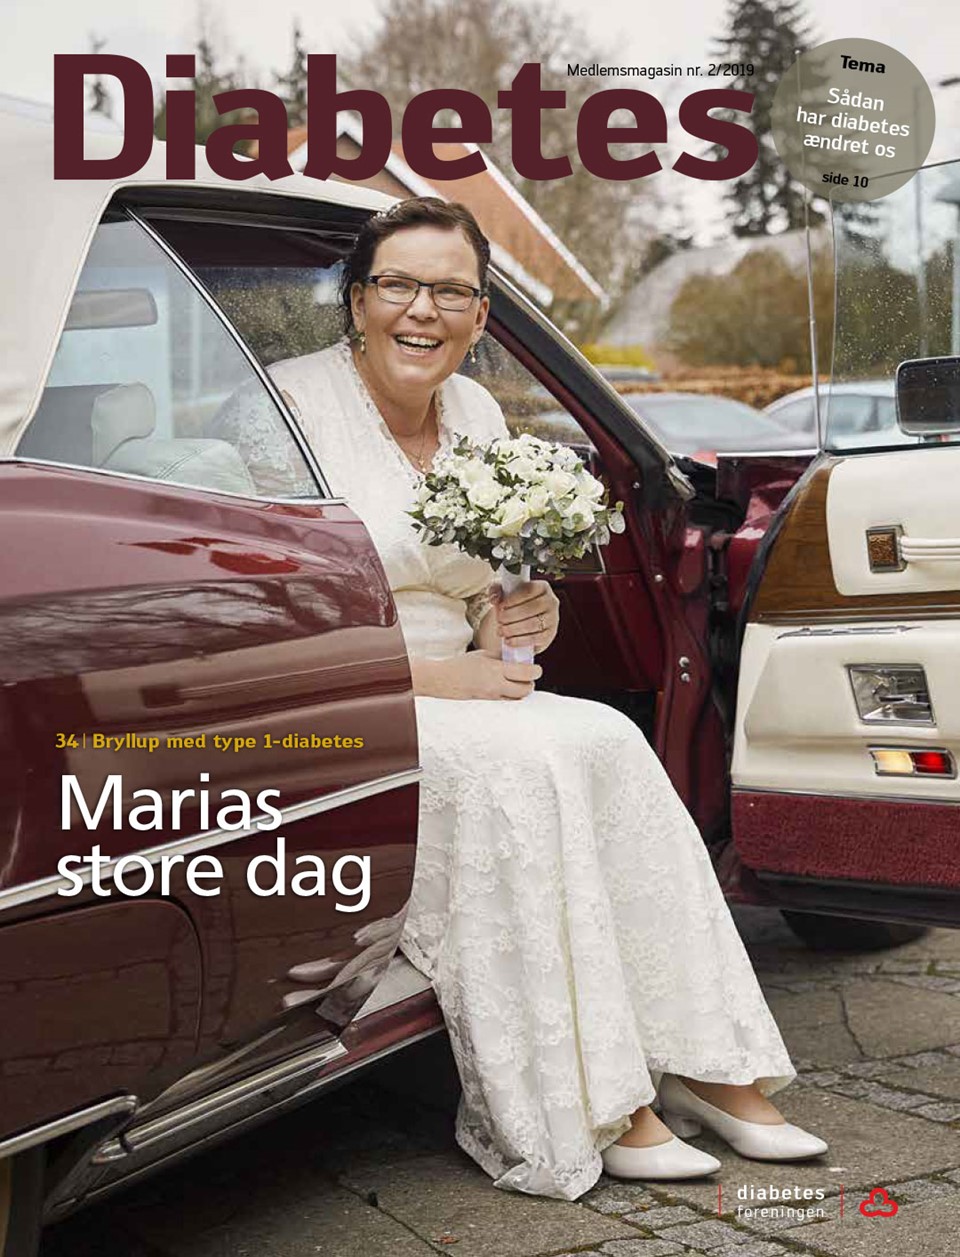  Forside af magasinet Diabetes juni 2019